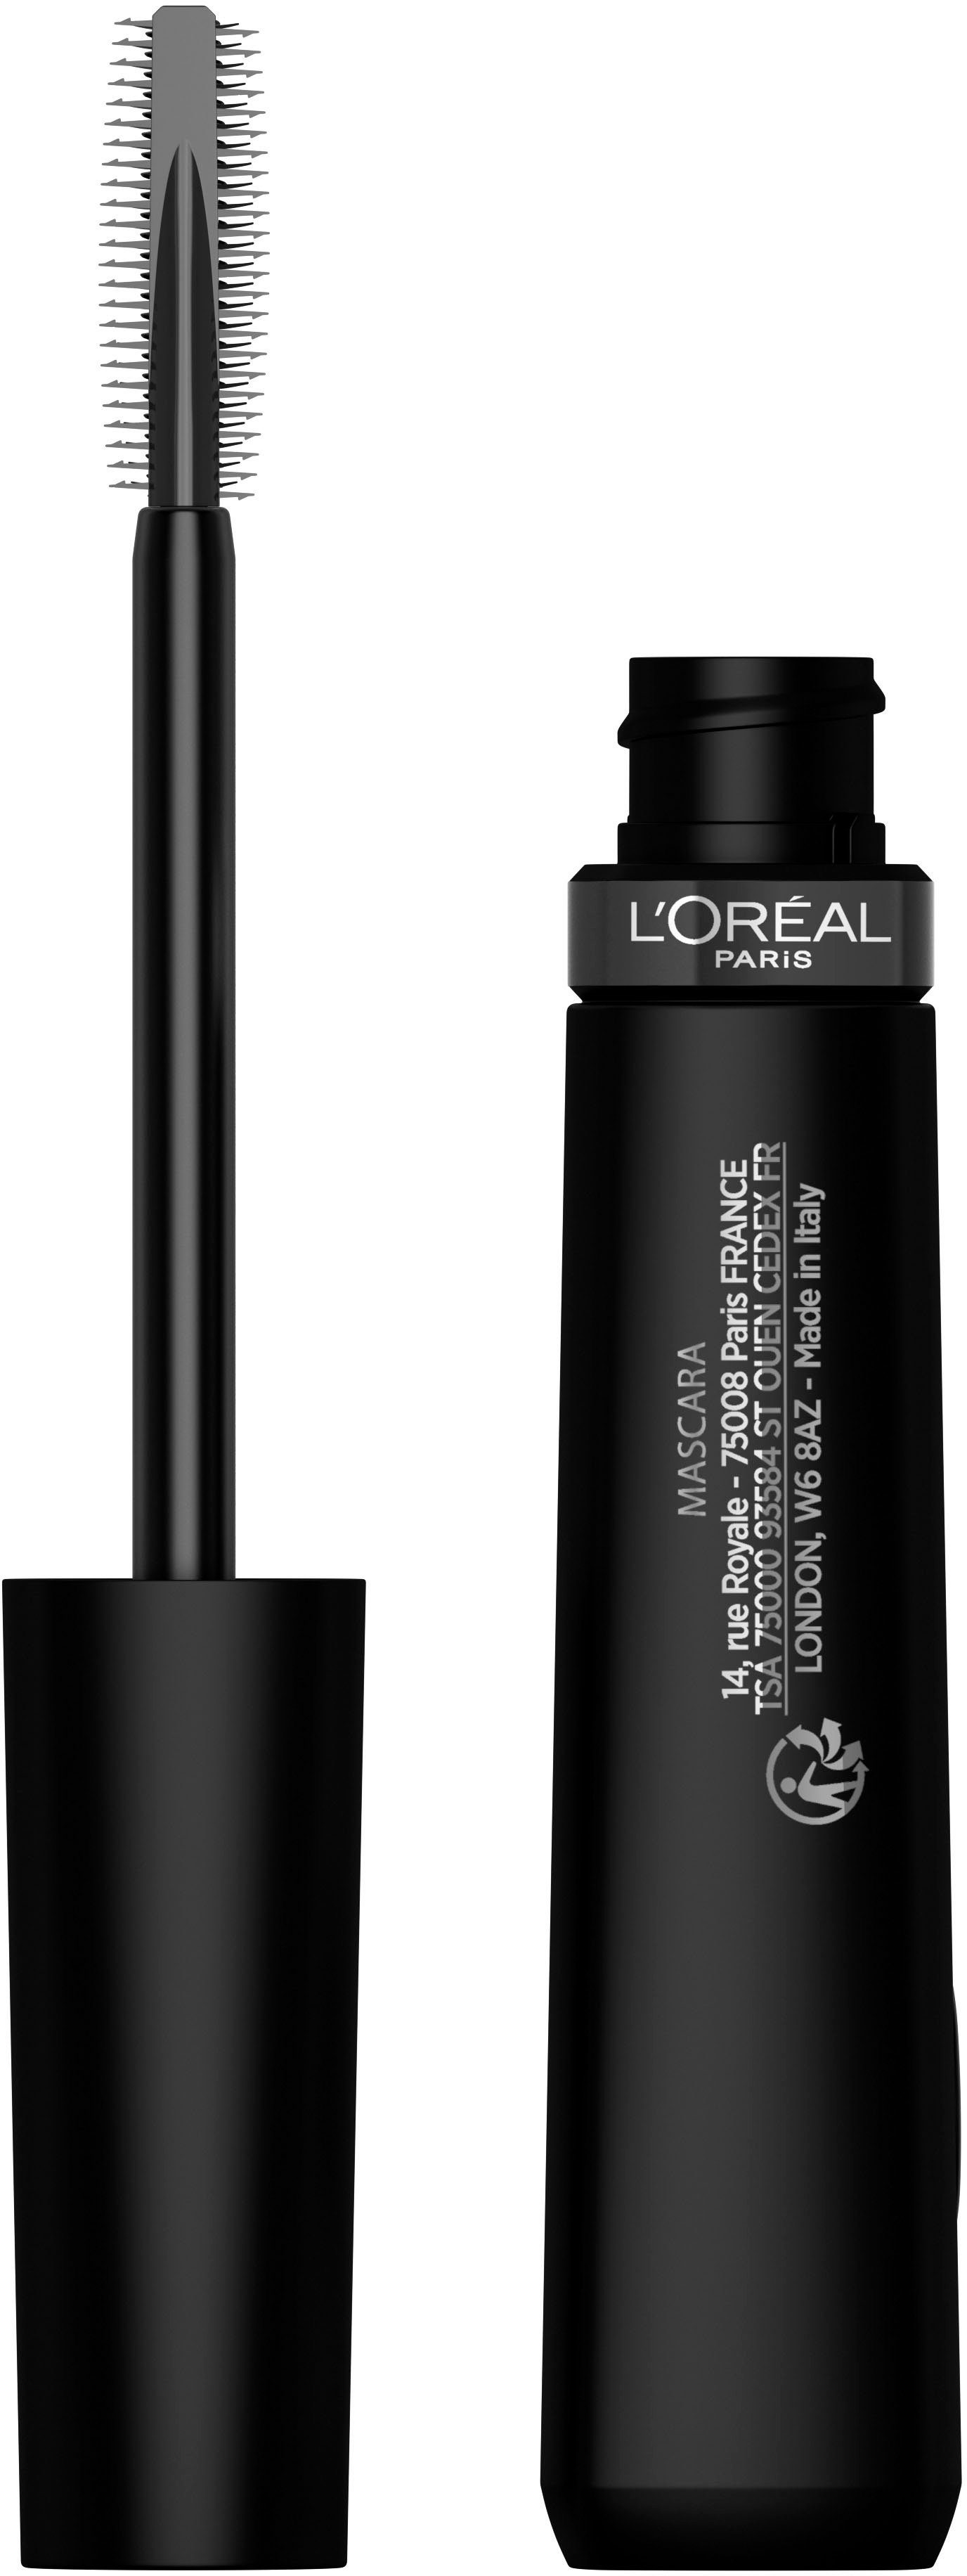 L'ORÉAL PARIS Mascara L'Oréal mit Paris Black Lift Telescopic Mascara, Lifting-Effekt Wimperntusche Extra